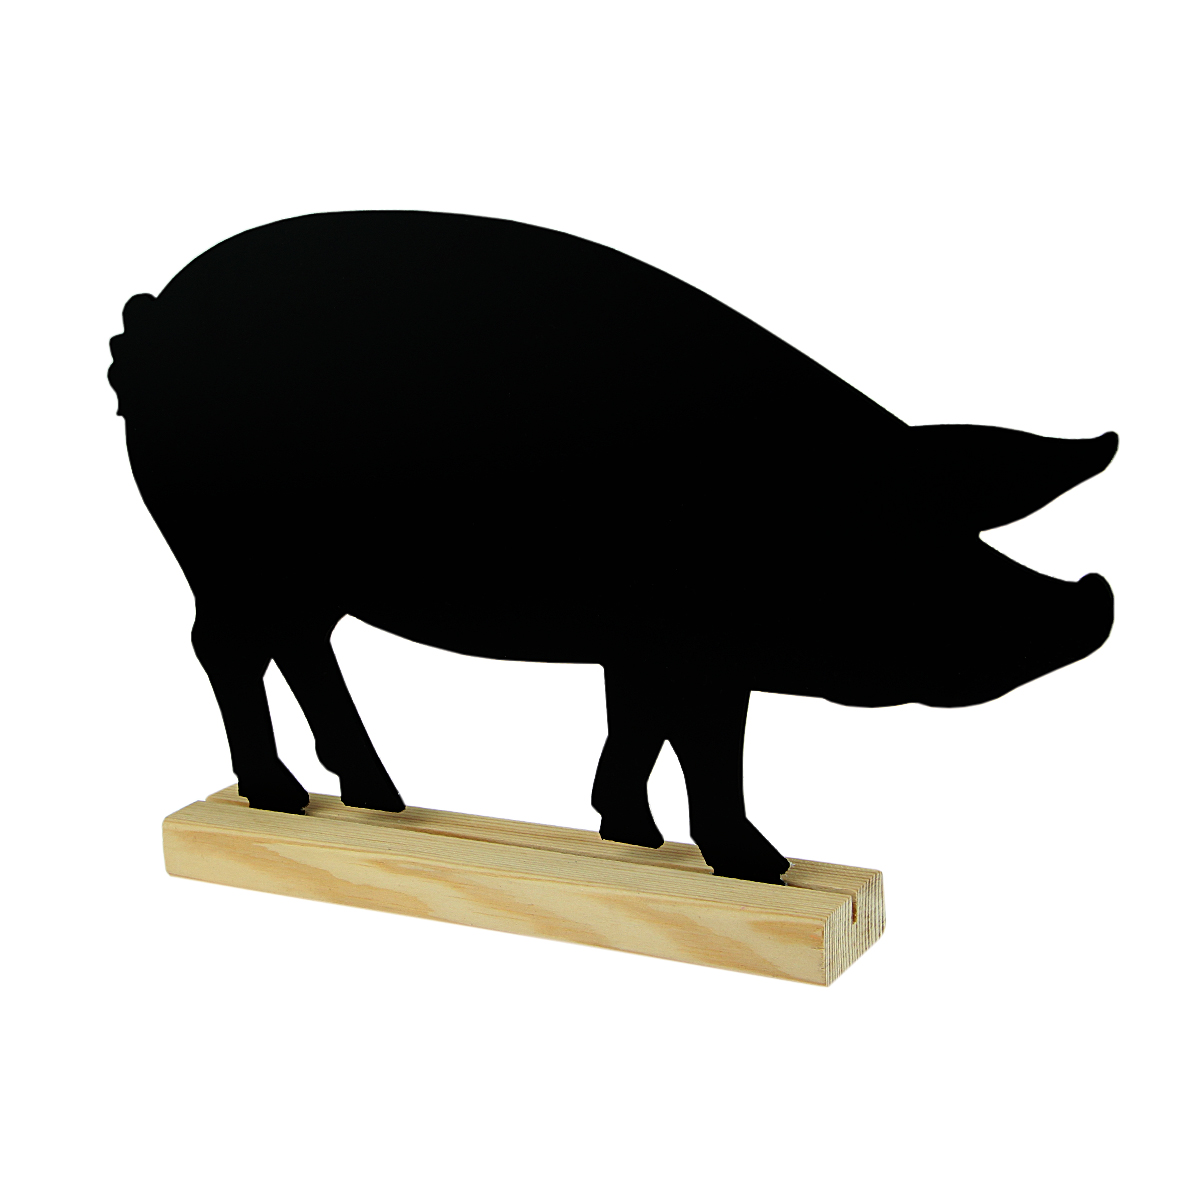 Меловая табличка "Хрюшка" BB PIG на подставке